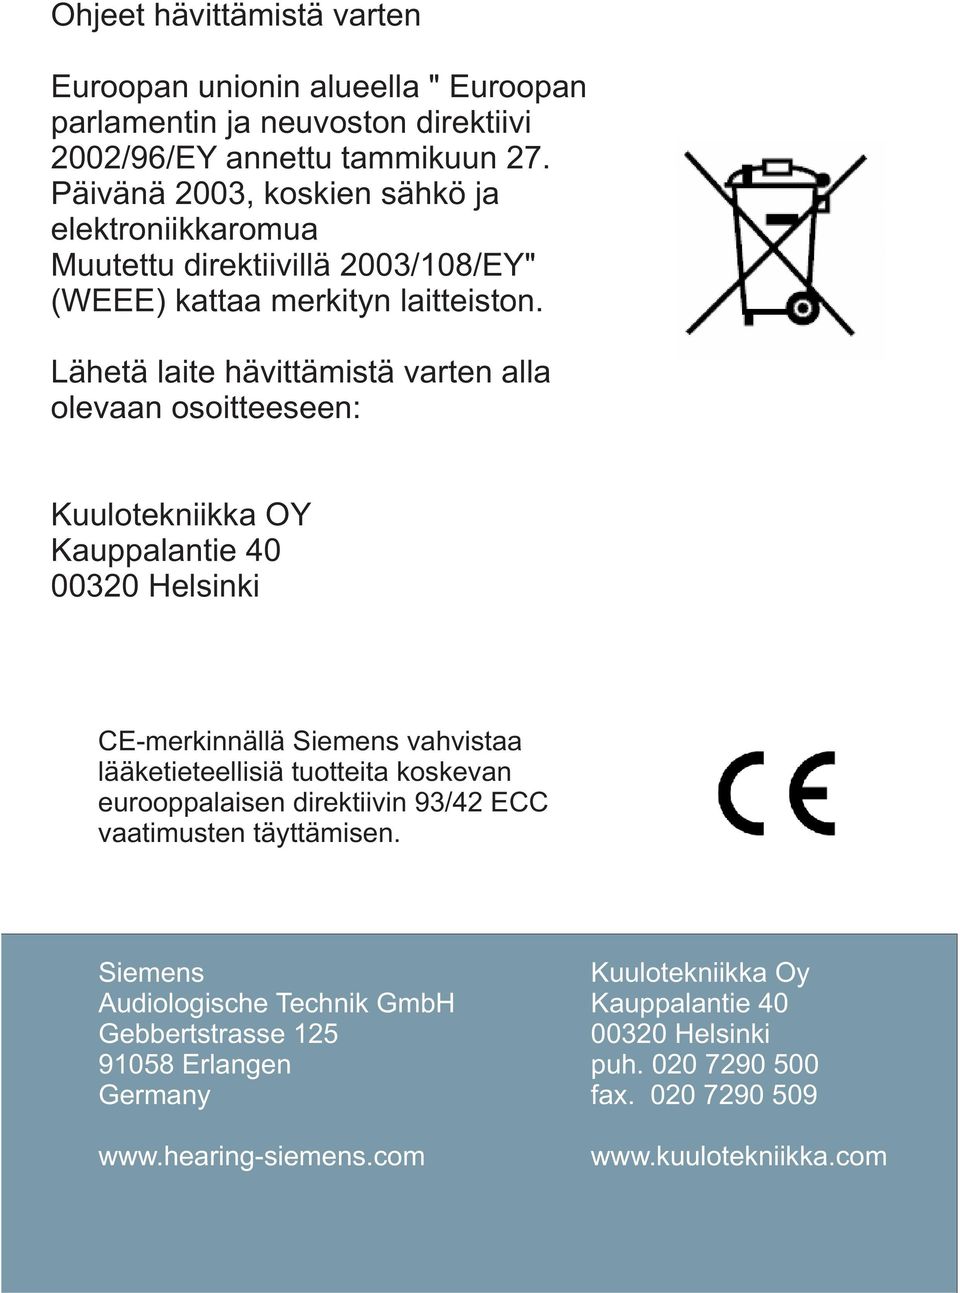 Lähetä laite hävittämistä varten alla olevaan osoitteeseen: Kuulotekniikka OY Kauppalantie 40 00320 Helsinki CE-merkinnällä Siemens vahvistaa lääketieteellisiä tuotteita